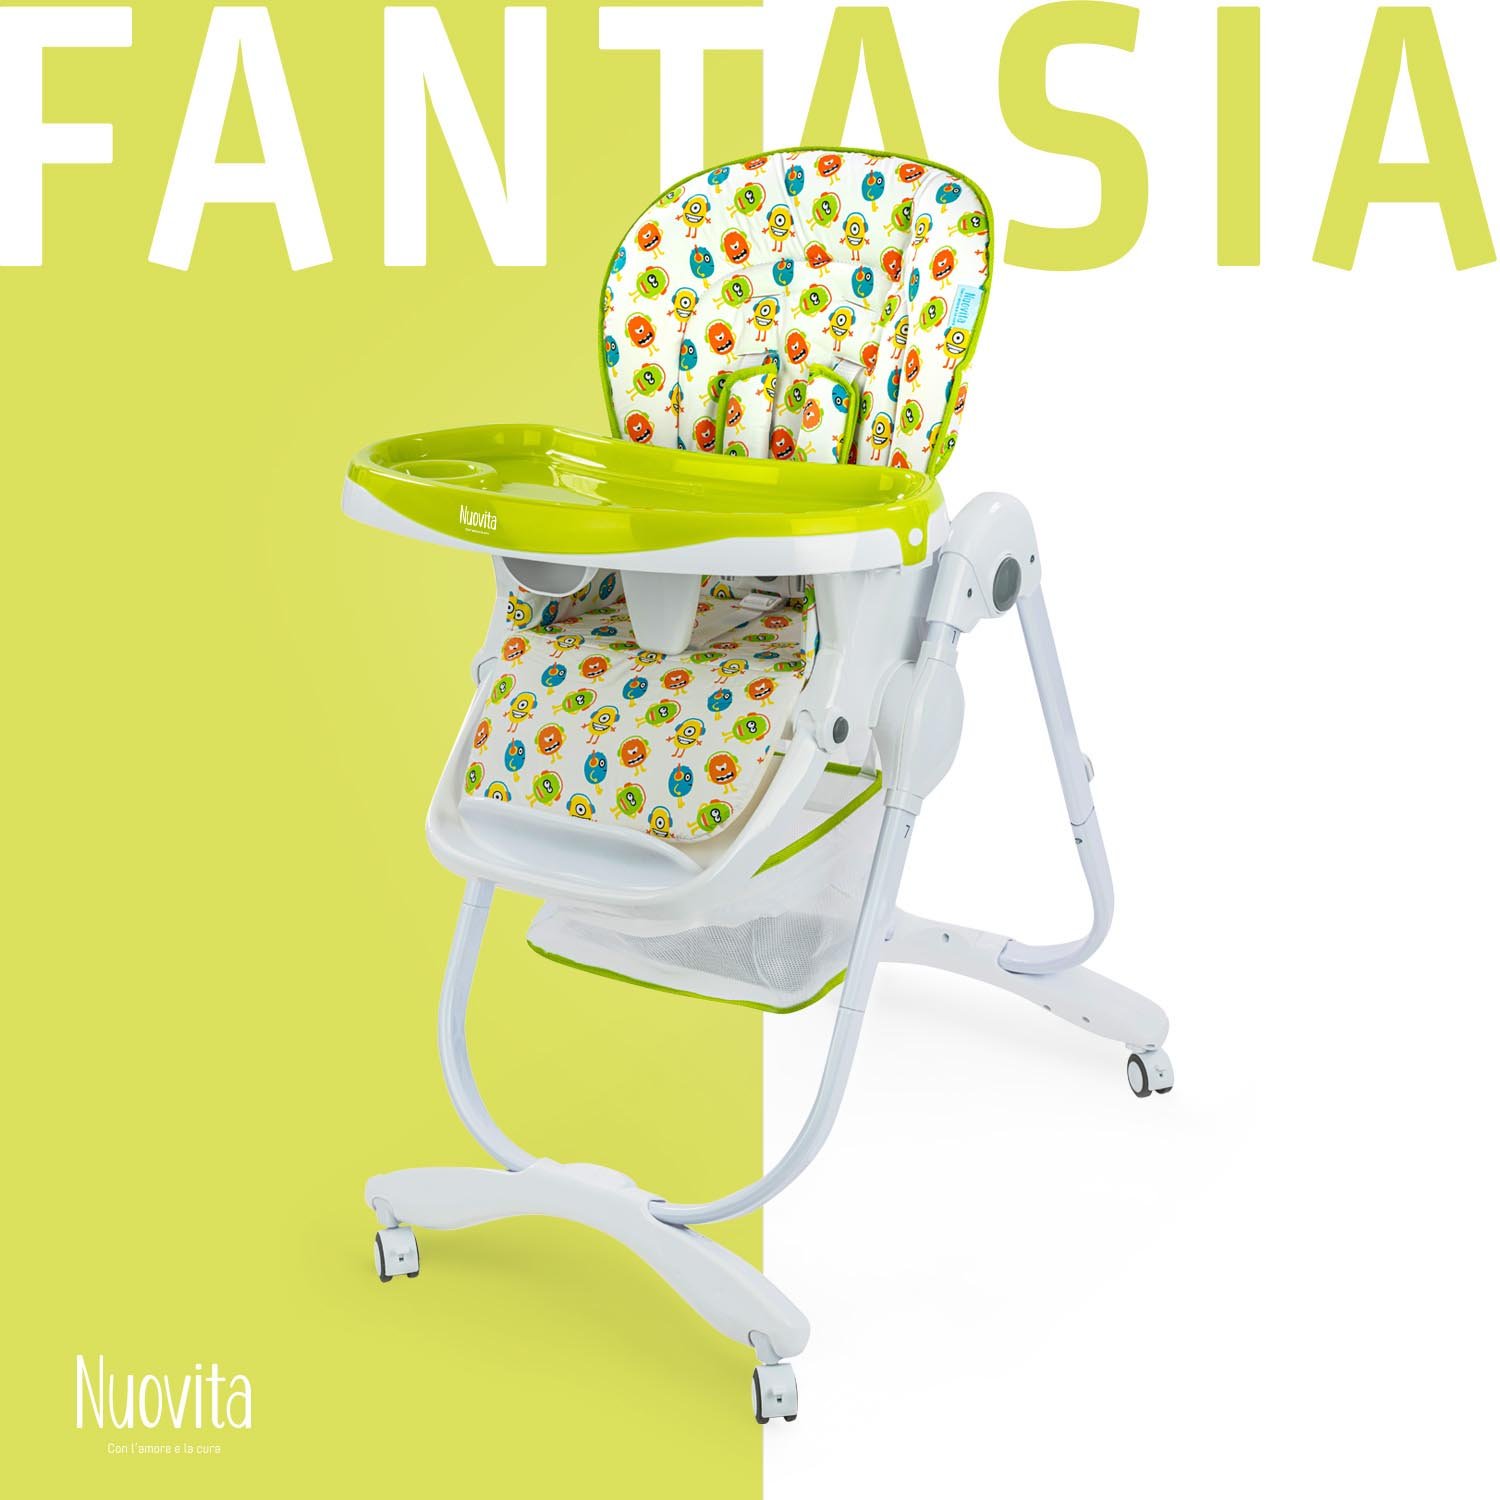 Стульчик для кормления Nuovita Fantasia (Amici/Друзья) стульчик для кормления nuovita fantasia